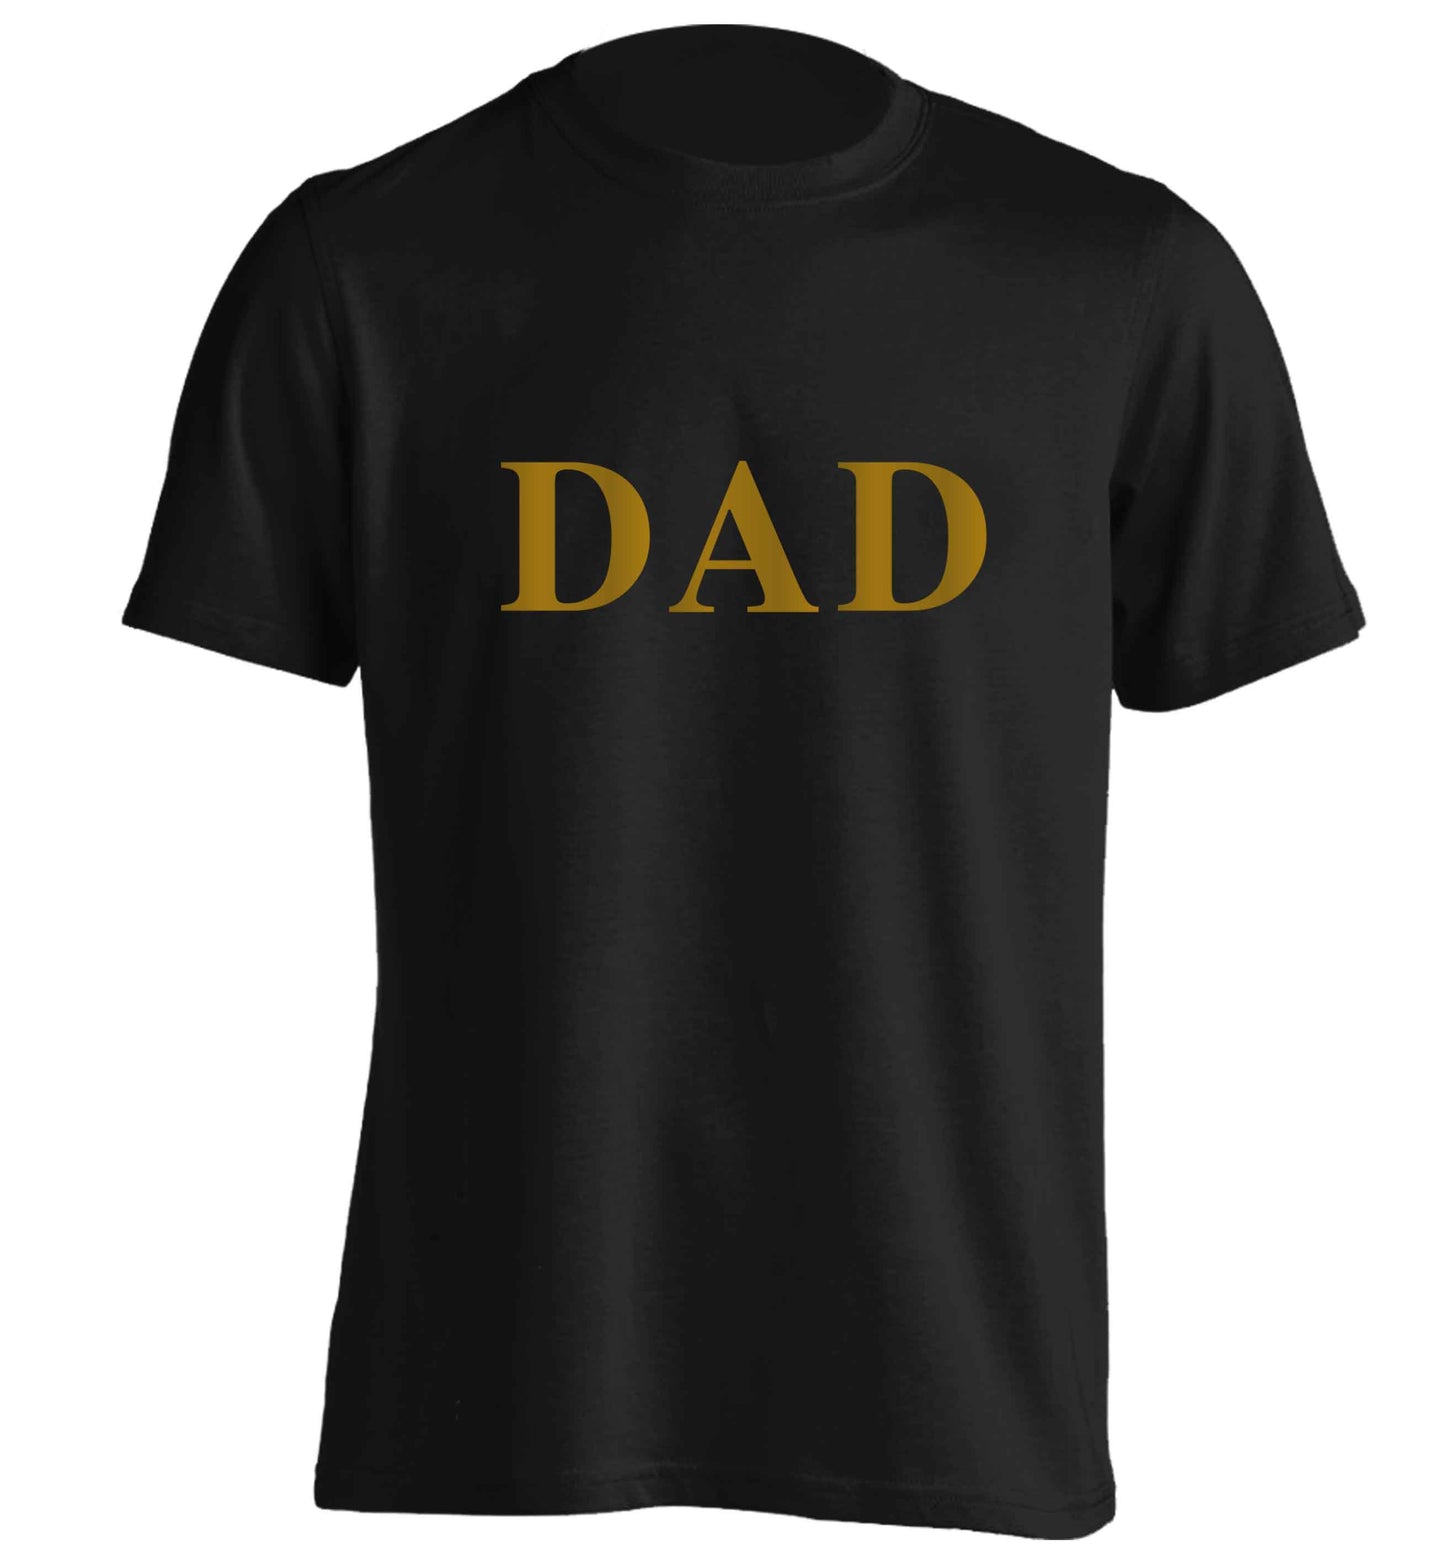 Dad adults unisex black Tshirt 2XL